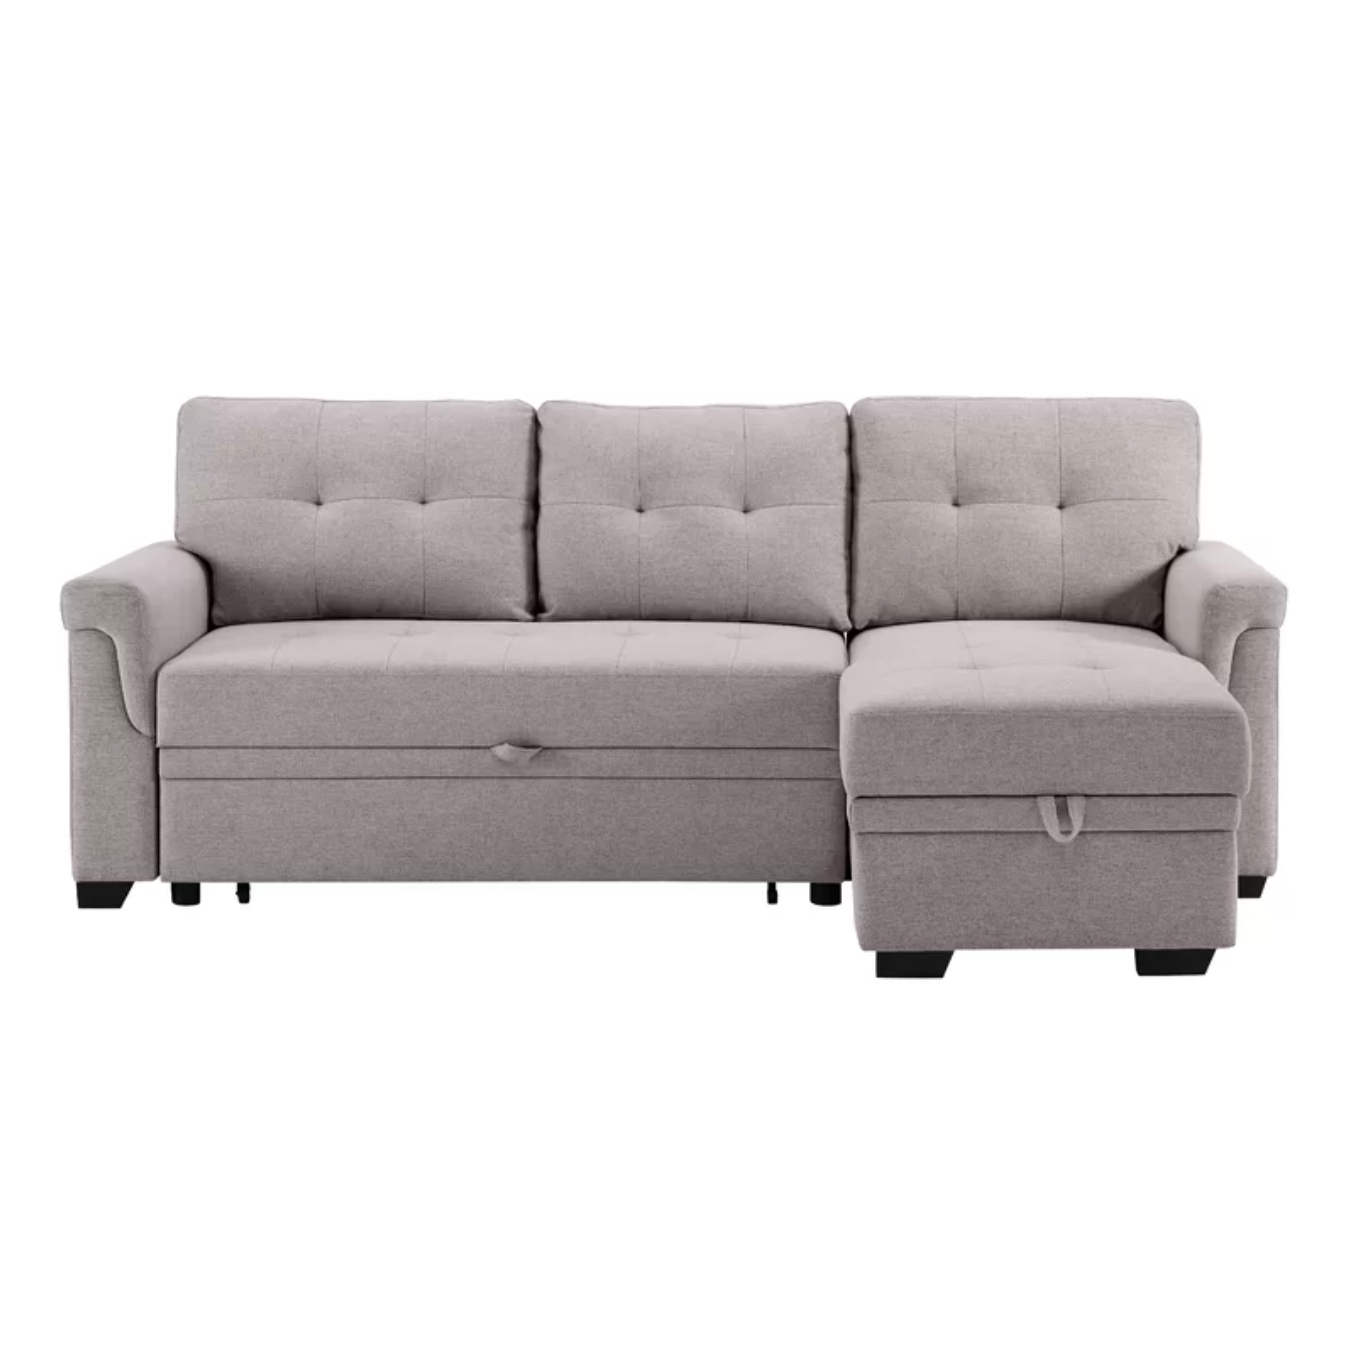 Sofa Cama Visby - 228 cm de Mueblemx